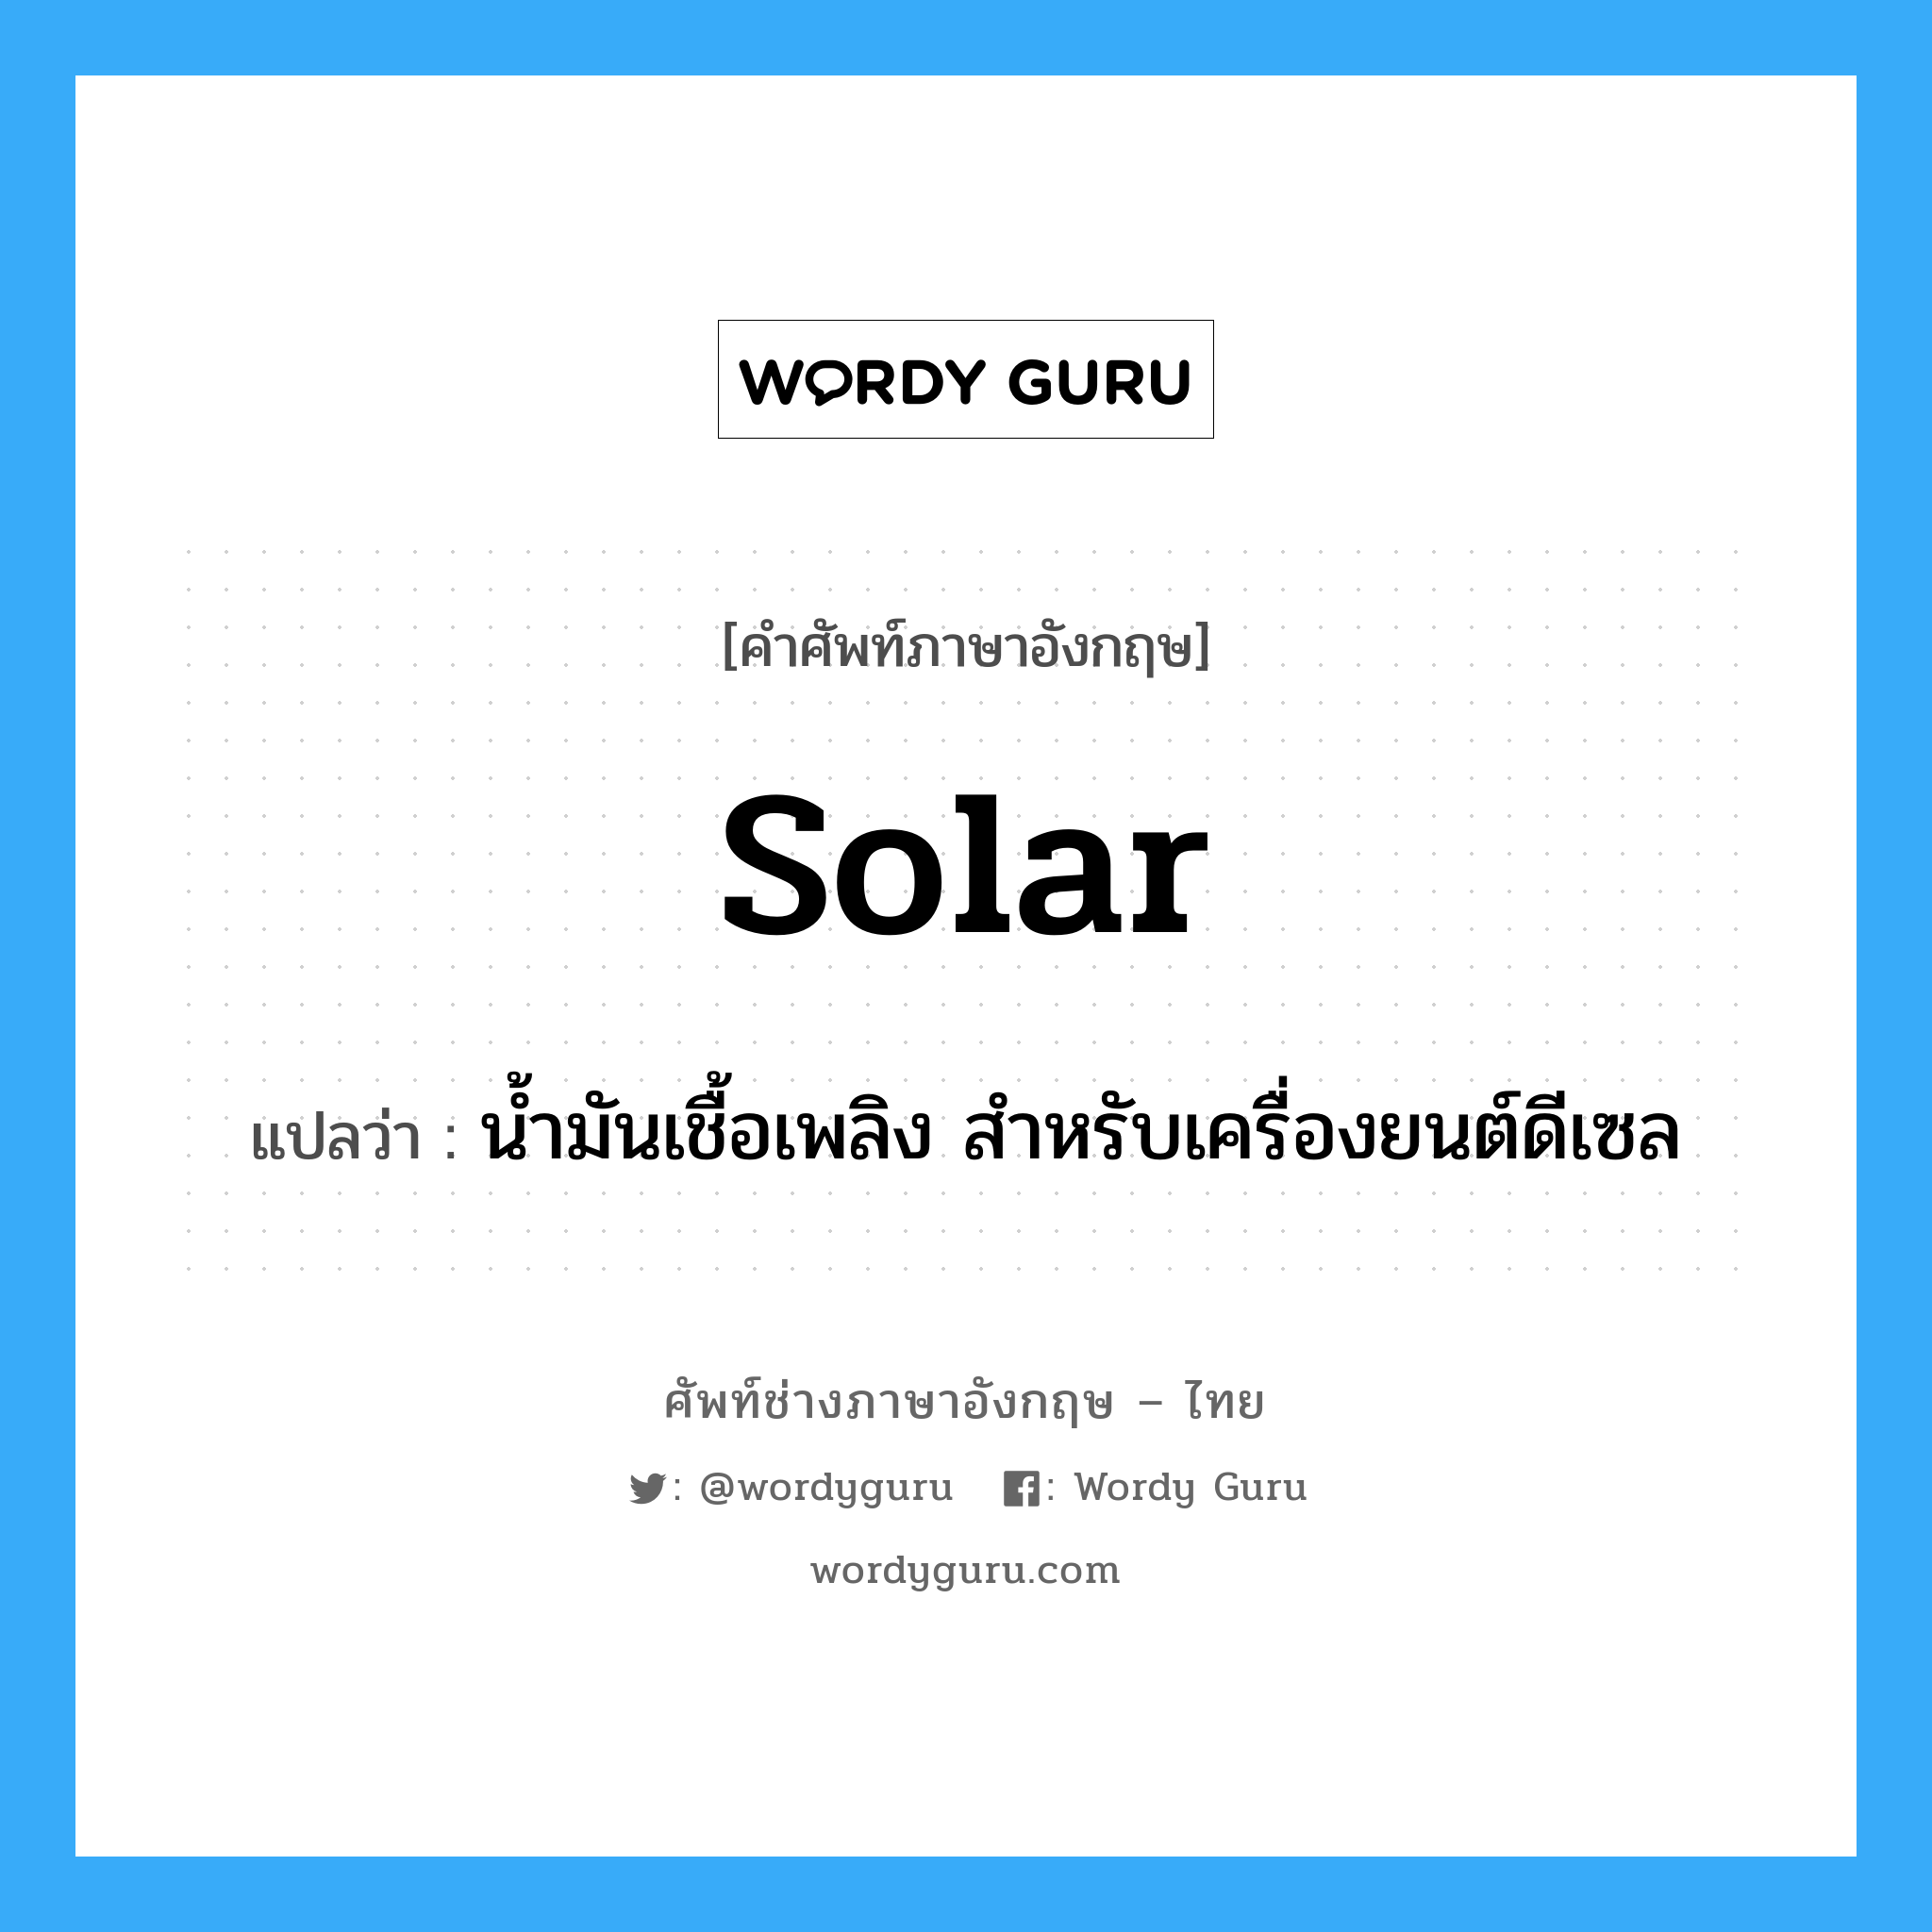 solar แปลว่า?, คำศัพท์ช่างภาษาอังกฤษ - ไทย solar คำศัพท์ภาษาอังกฤษ solar แปลว่า น้ำมันเชื้อเพลิง สำหรับเครื่องยนต์ดีเซล